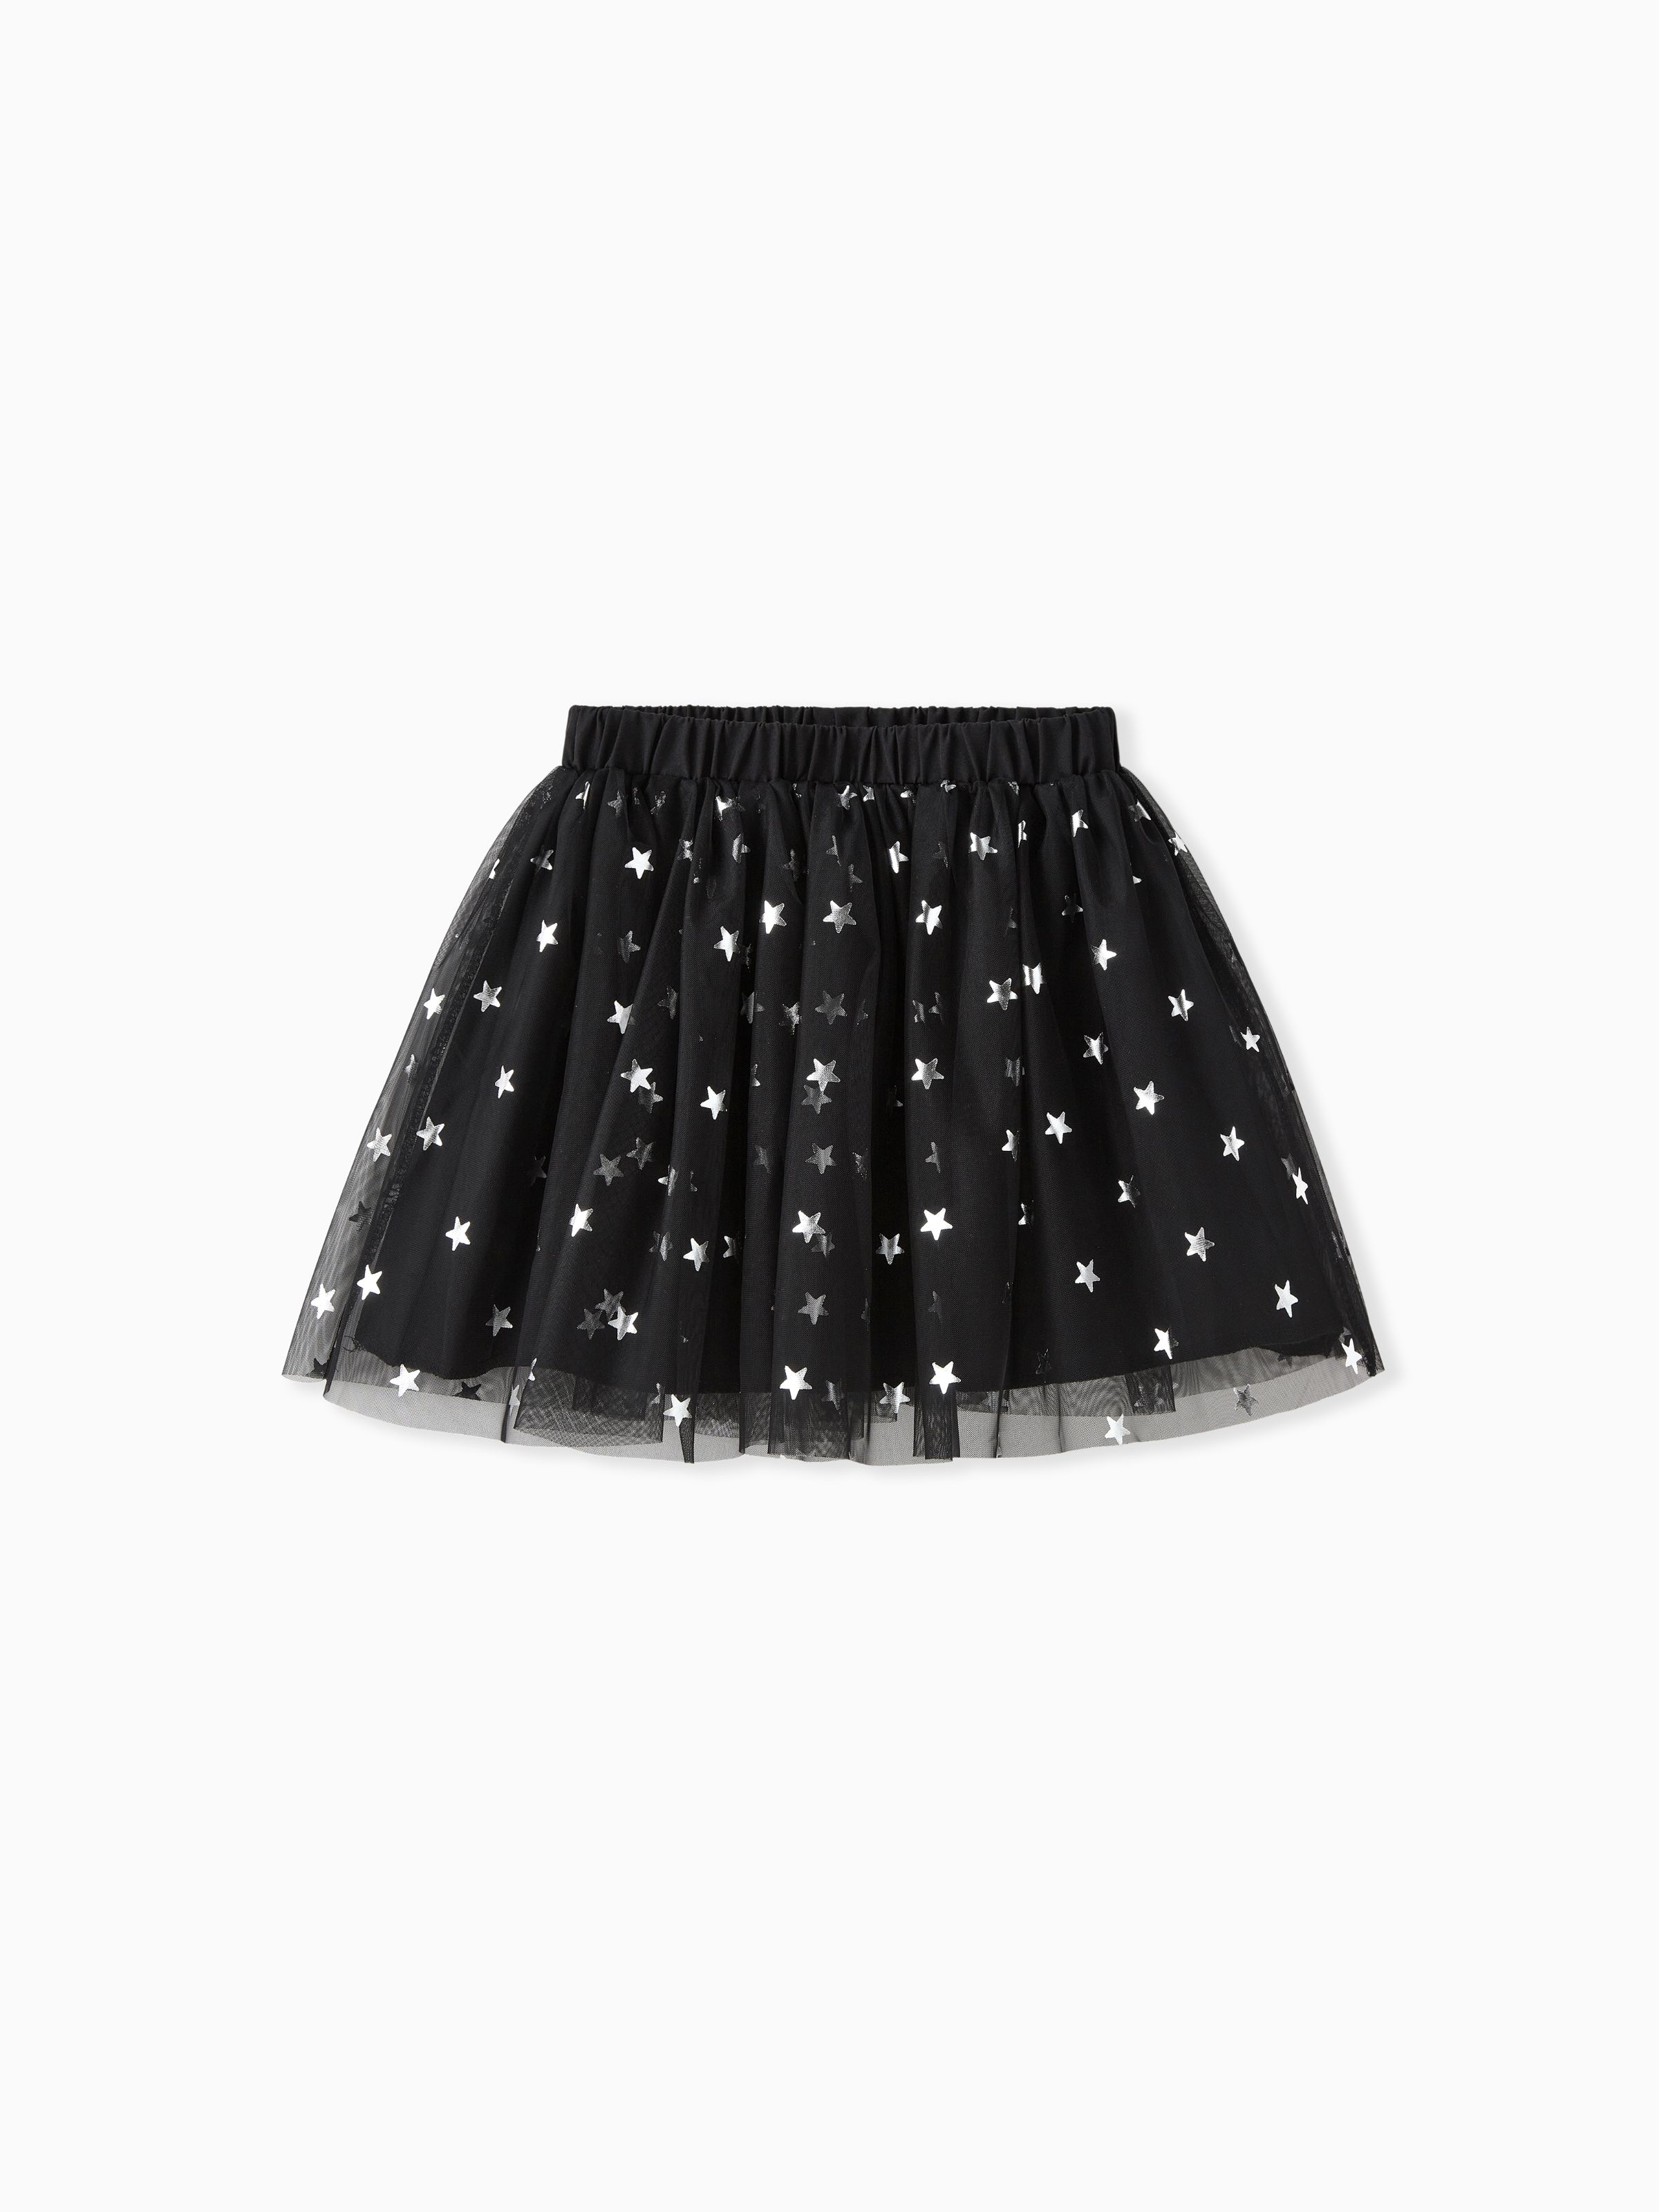 

Sweet Oversized Multi-layered Stars Skirt for Girls - 100% Polyester